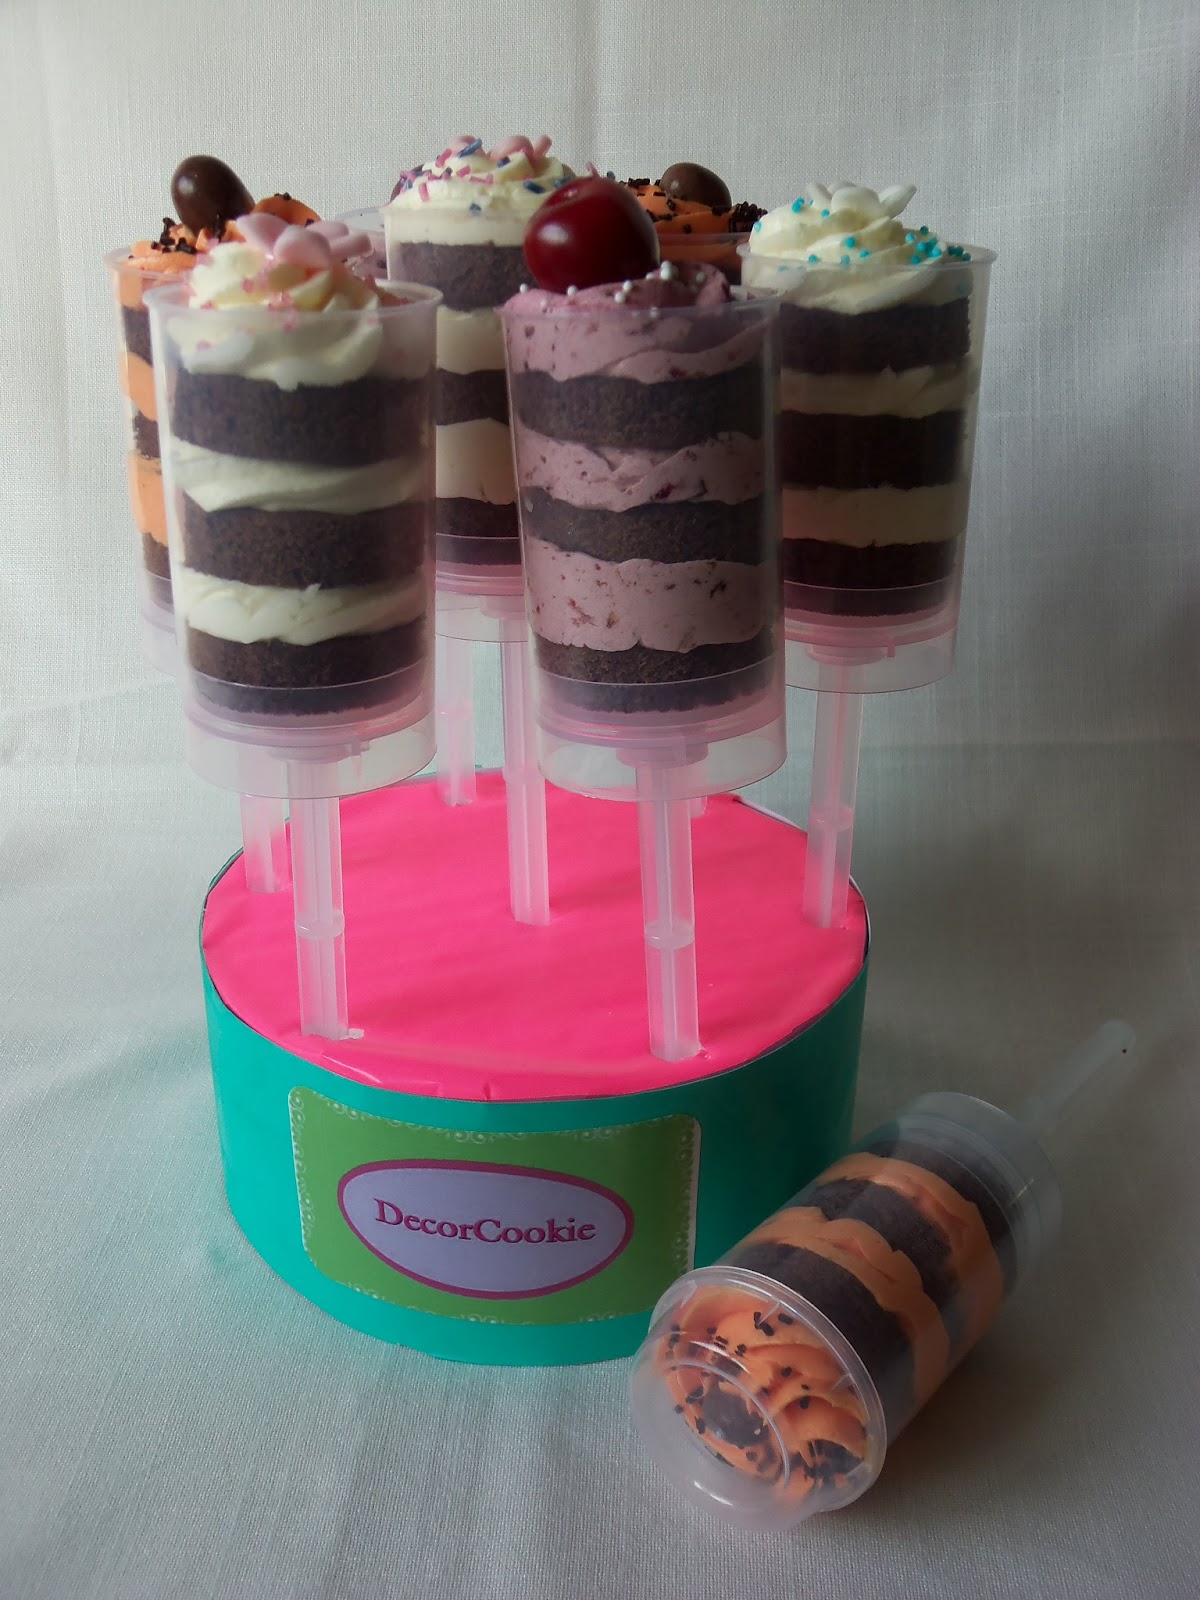 Galletas decoradas DecorCookie: Cake Pop push ups